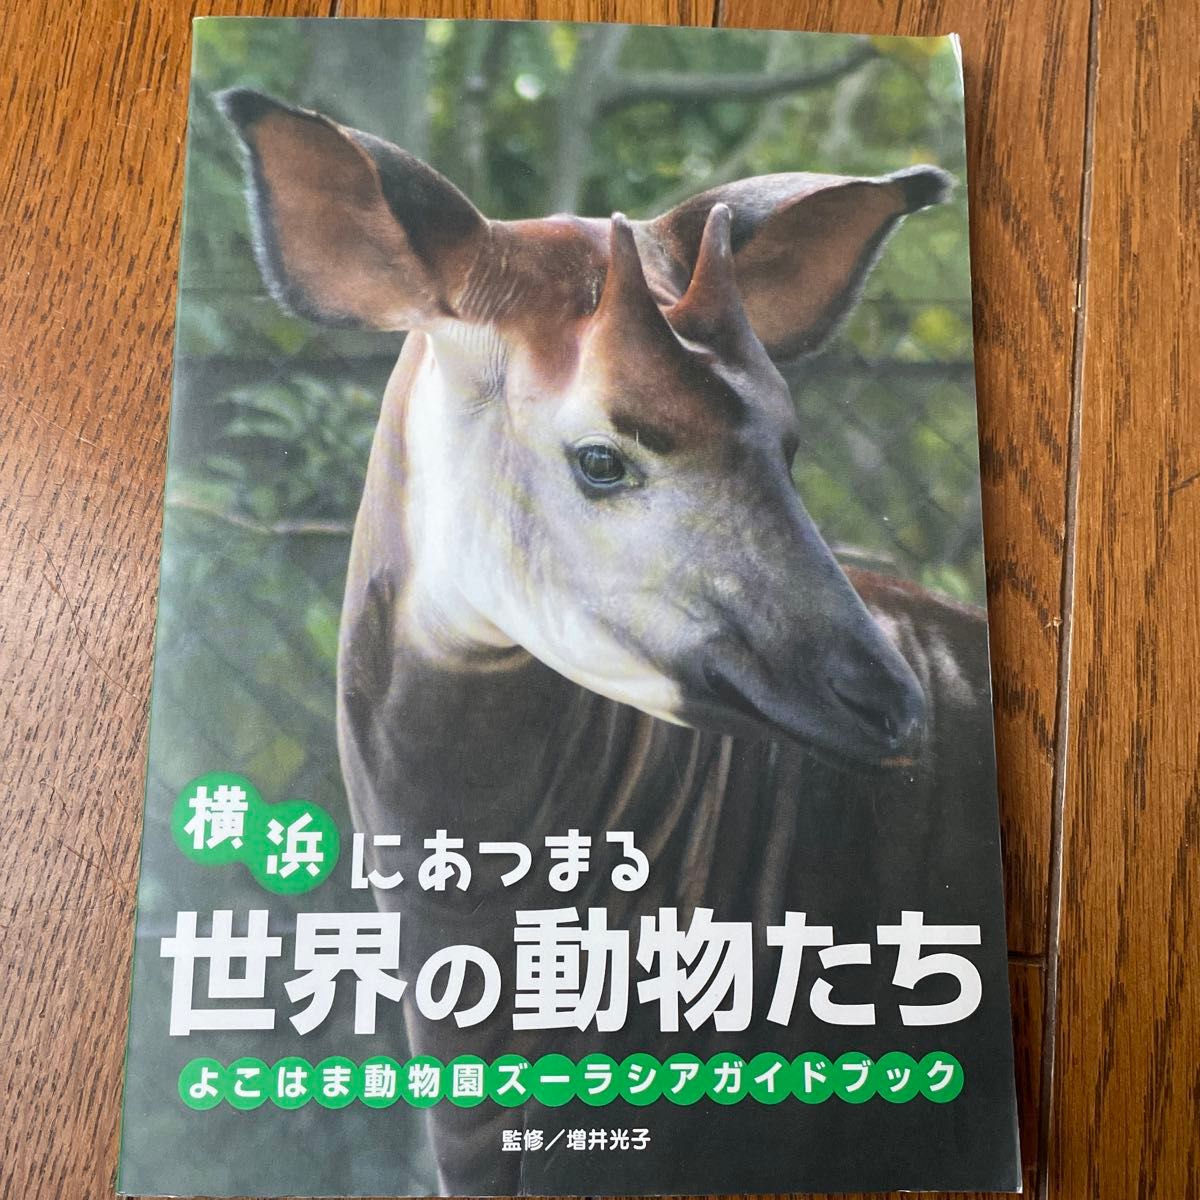 横浜にあつまる世界の動物たち　よこはま動物園ズーラシアガイドブック